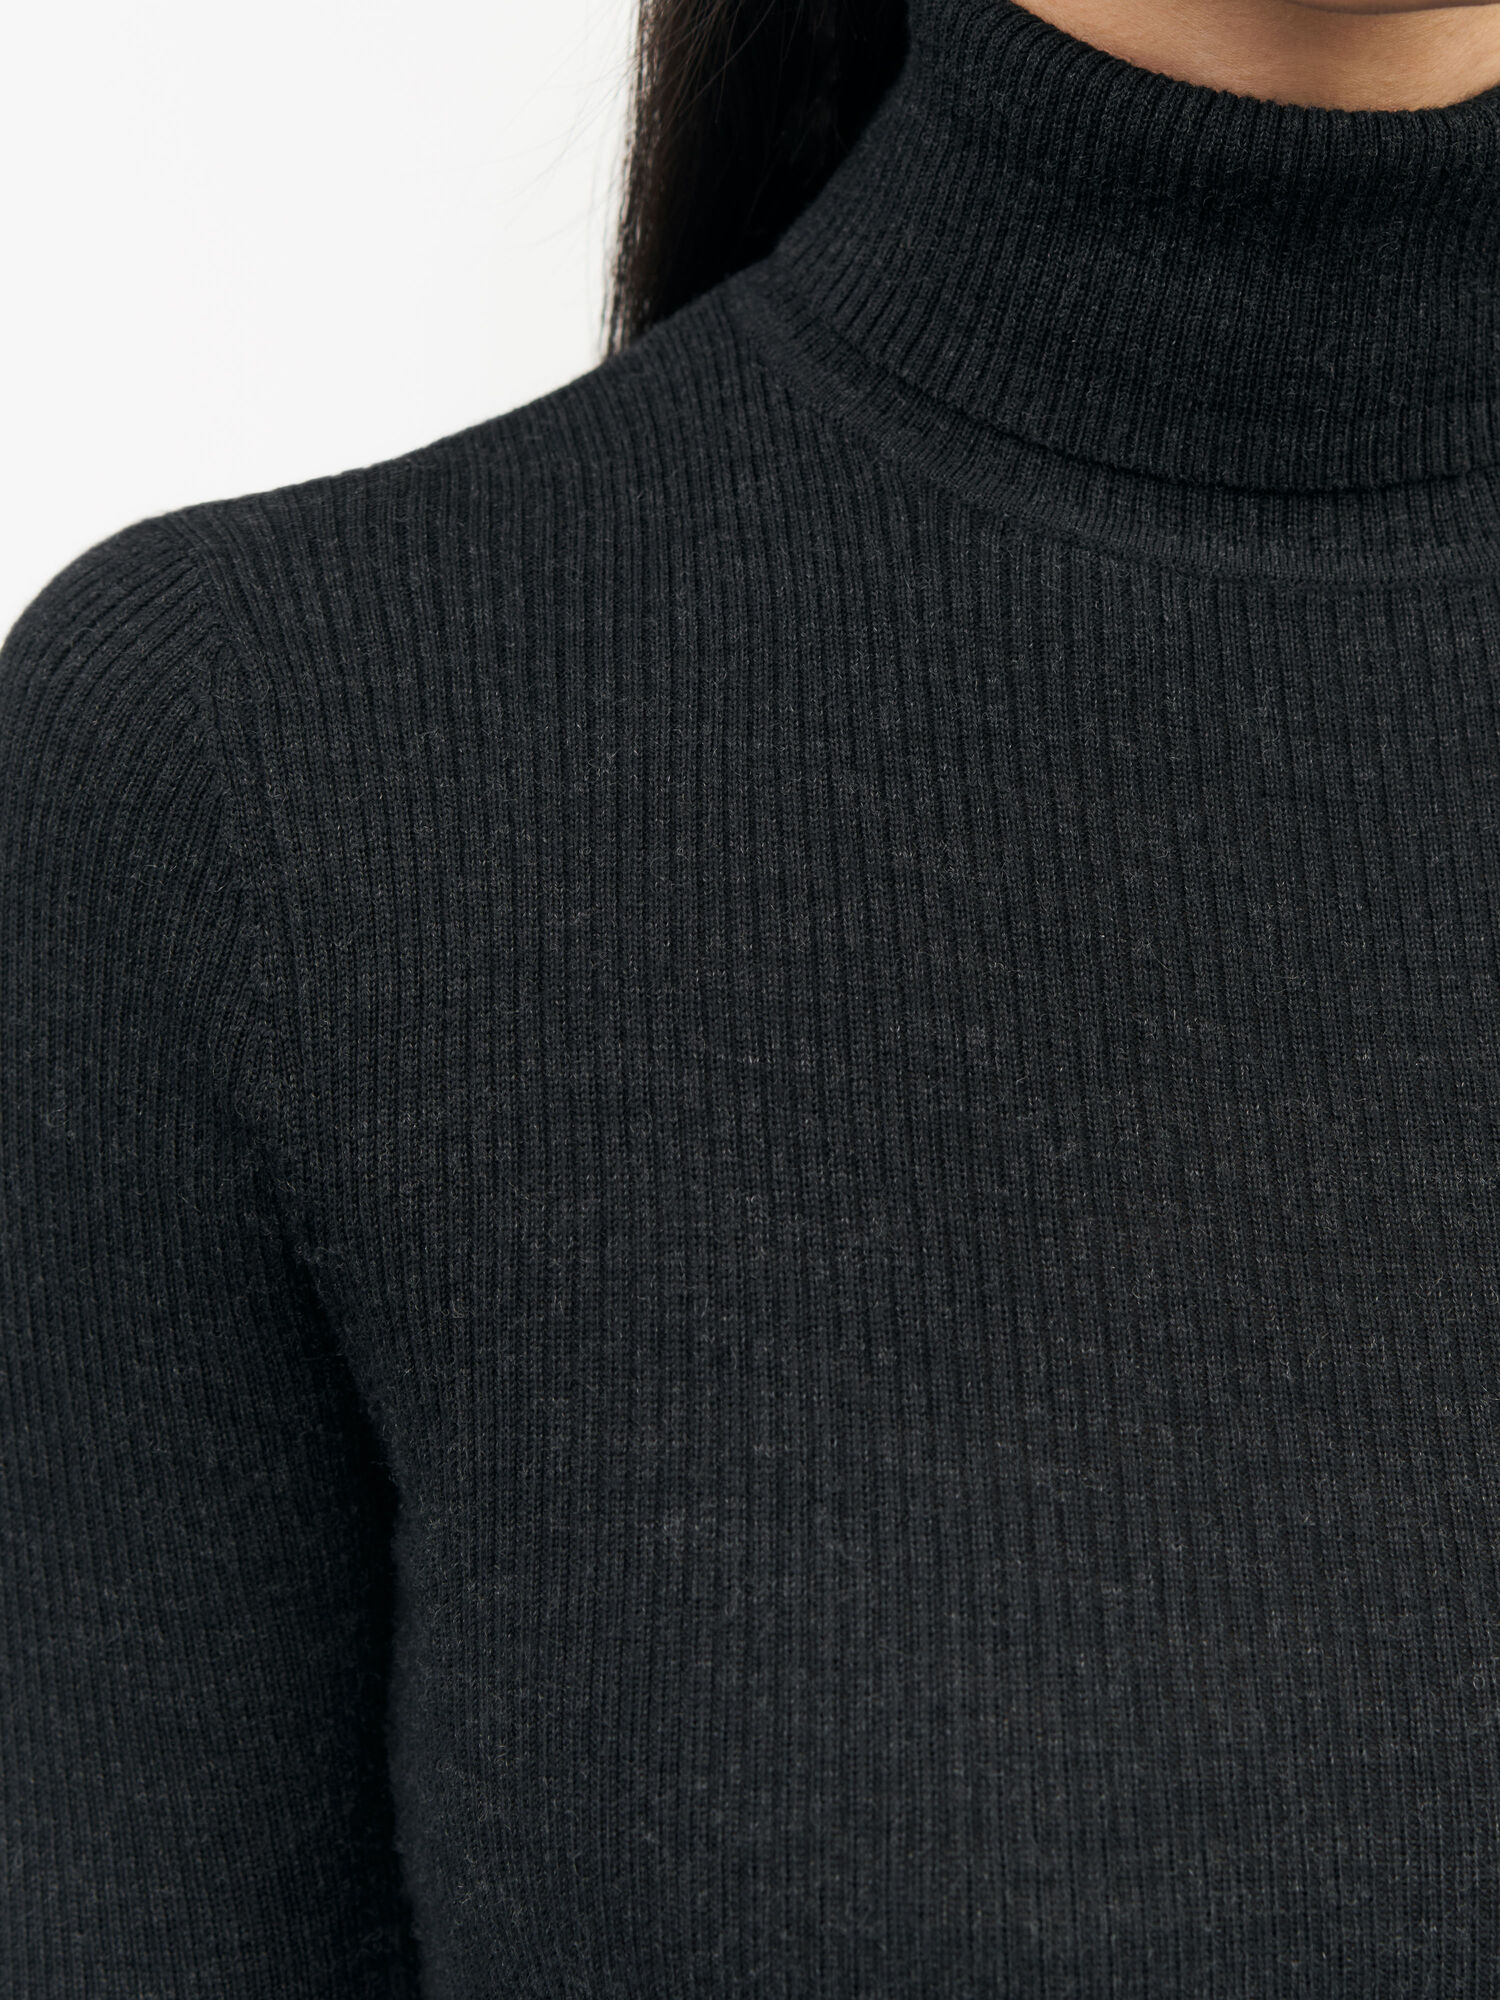 Caprio Sweater